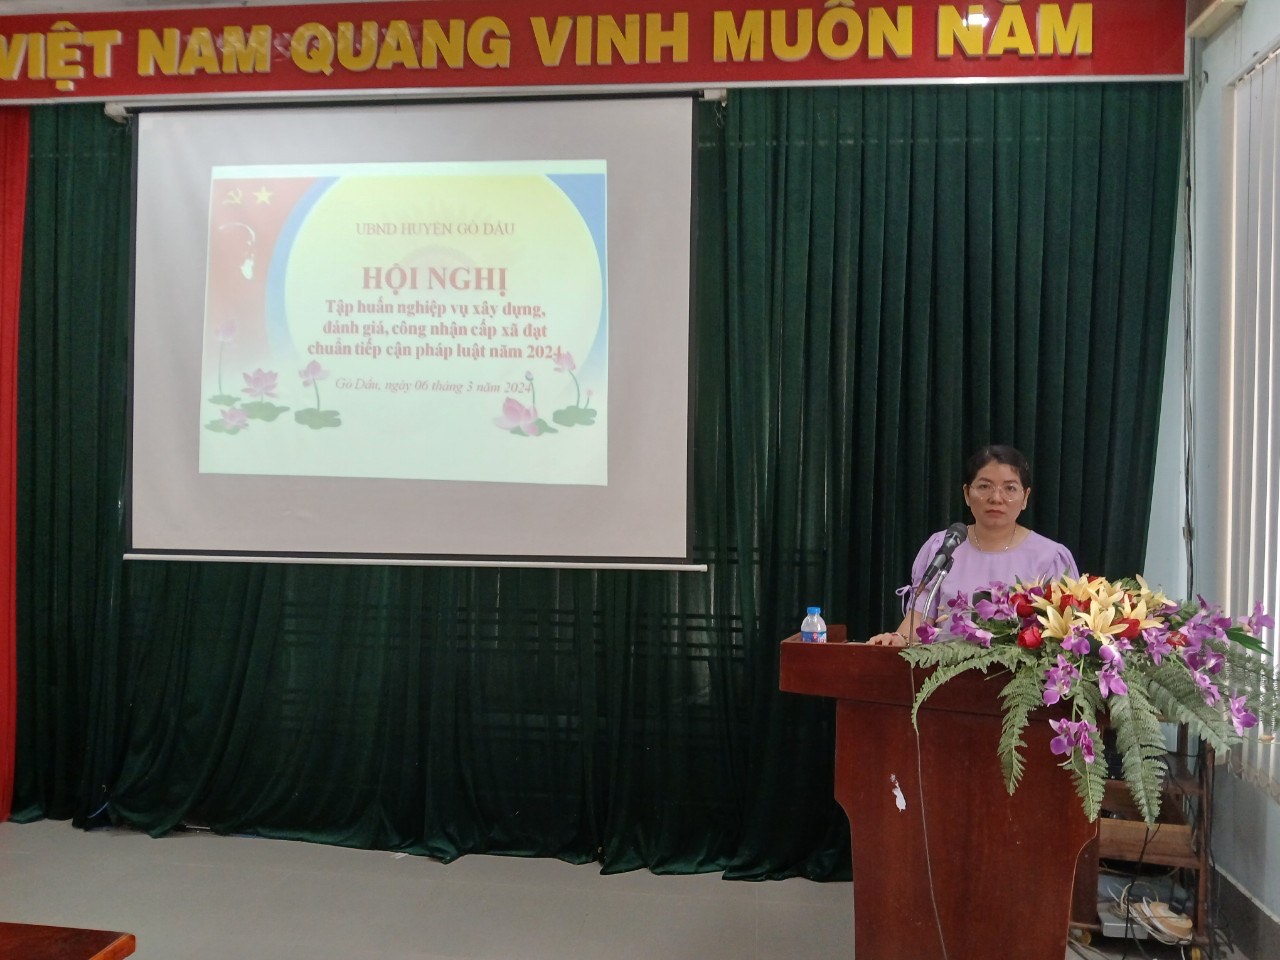 Ủy ban nhân dân huyện Gò Dầu tổ chức Hội nghị tập huấn nghiệp vụ xây dựng, đánh giá, công nhận cấp xã đạt chuẩn tiếp cận pháp luật